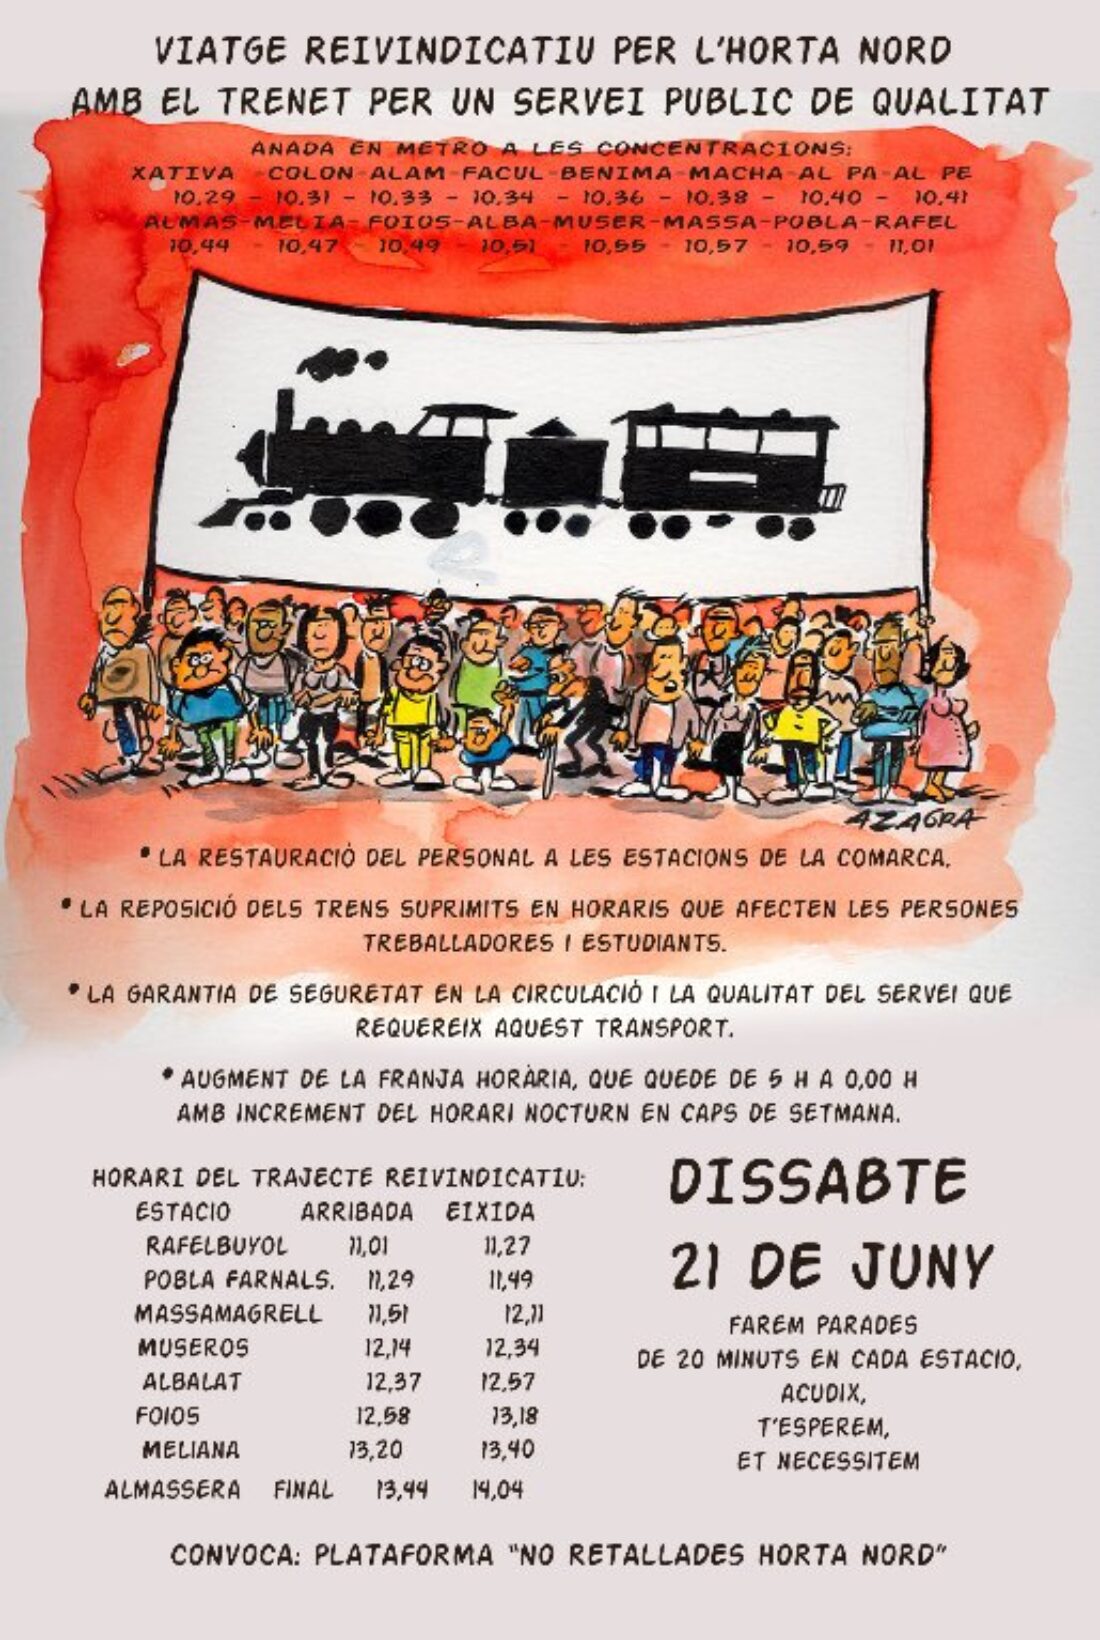 21-j: La Plataforma «No Retallades Horta Nord» llama a participar en el viaje reivindicativo en metro por un servicio público y de calidad